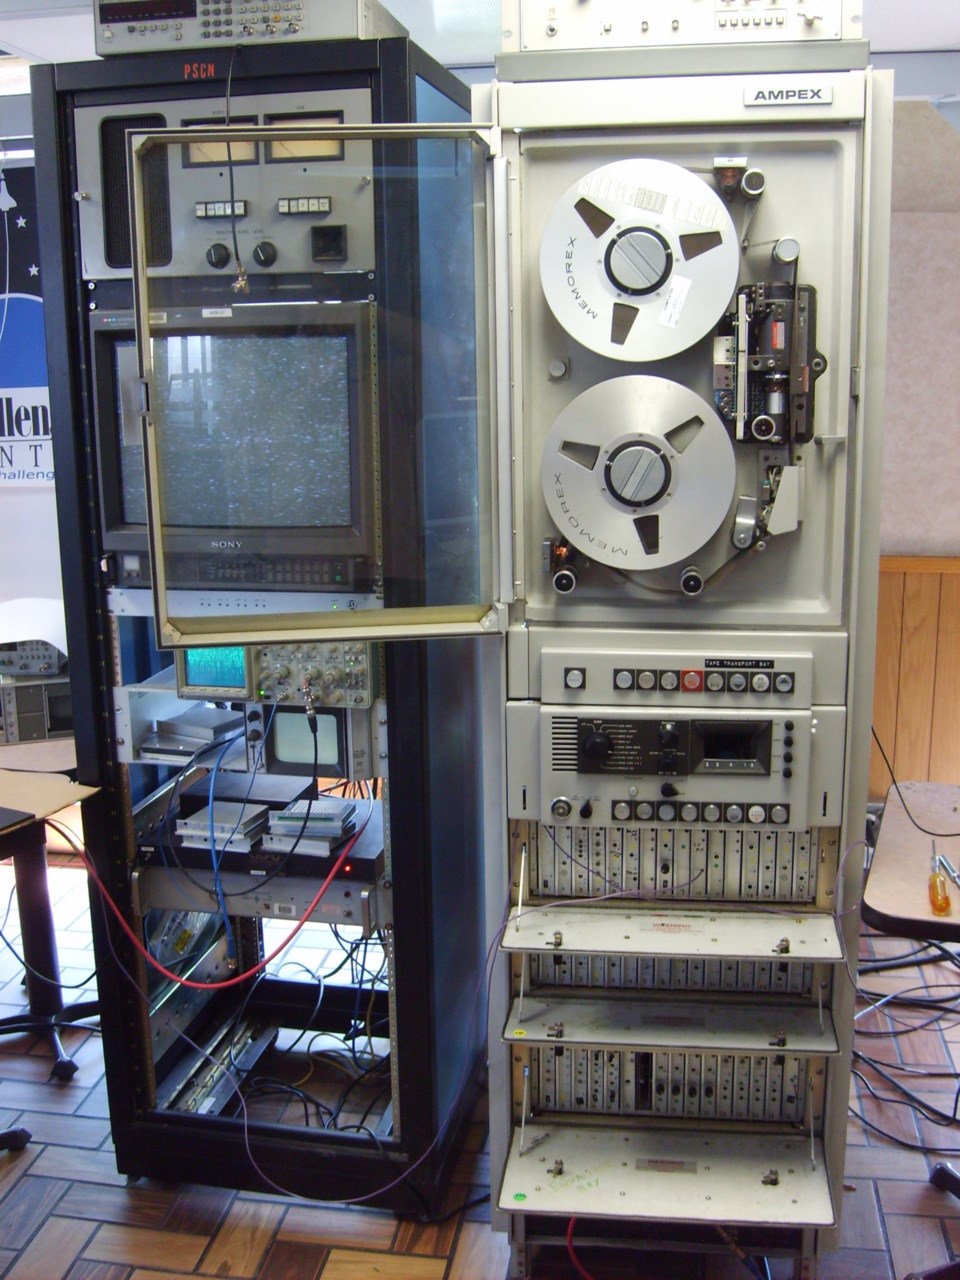 Ampex FR-900 at LOIRP.jpg